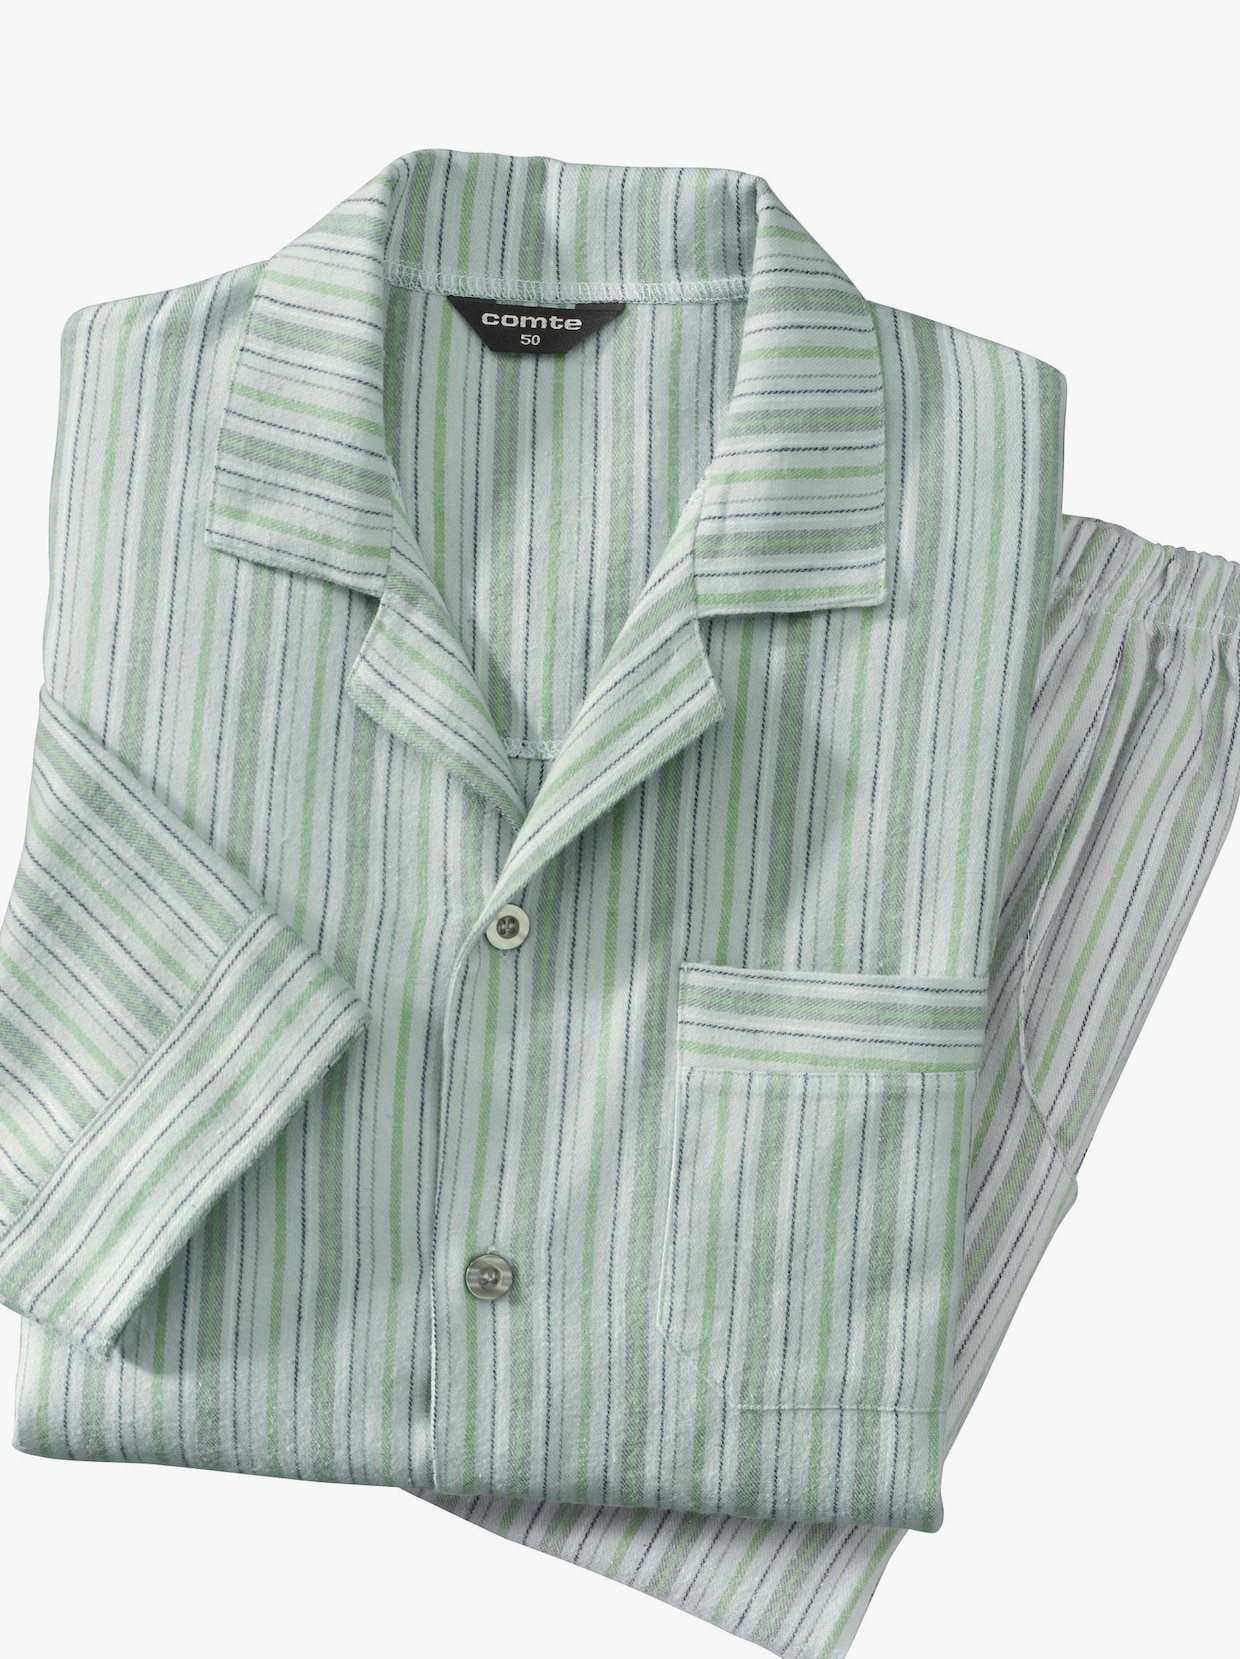 Comte Pyjama - grün-gestreift